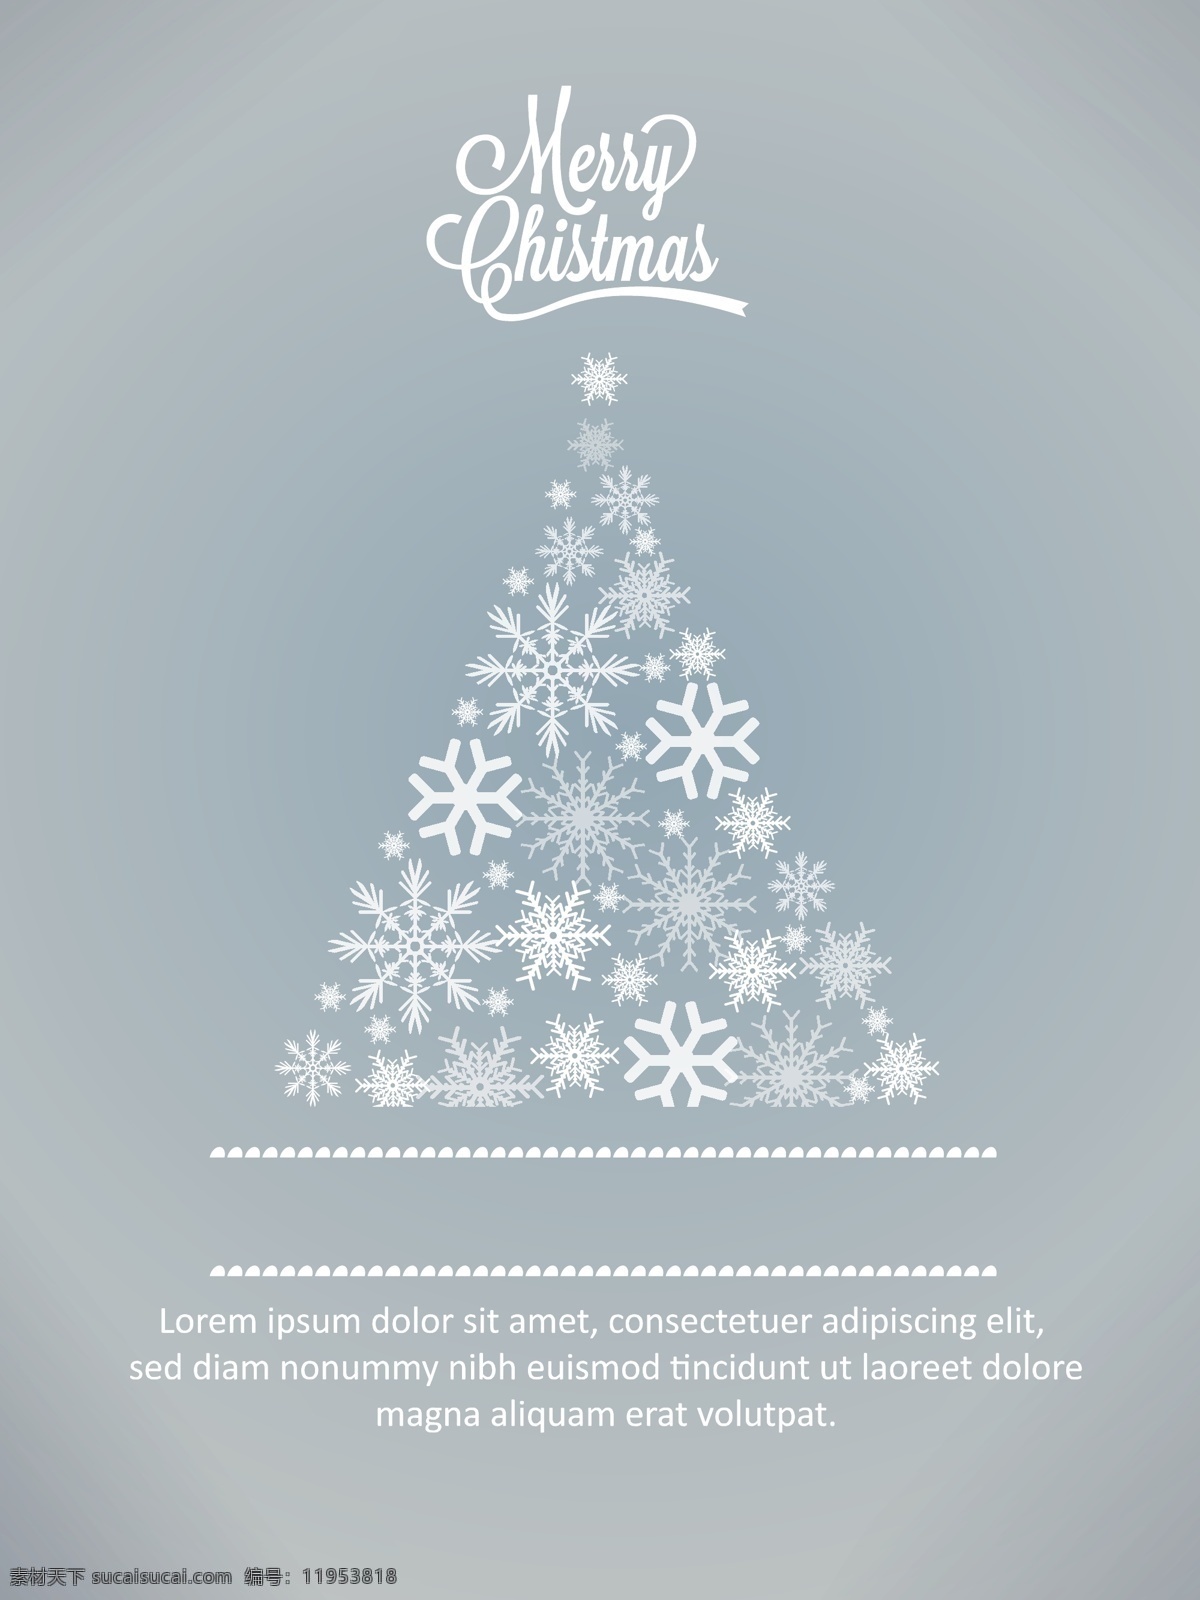 圣诞雪花背景 圣诞快乐 圣诞 节日素材 新年 新年快乐 海报 广告 插画 圣诞节 矢量素材 圣诞树